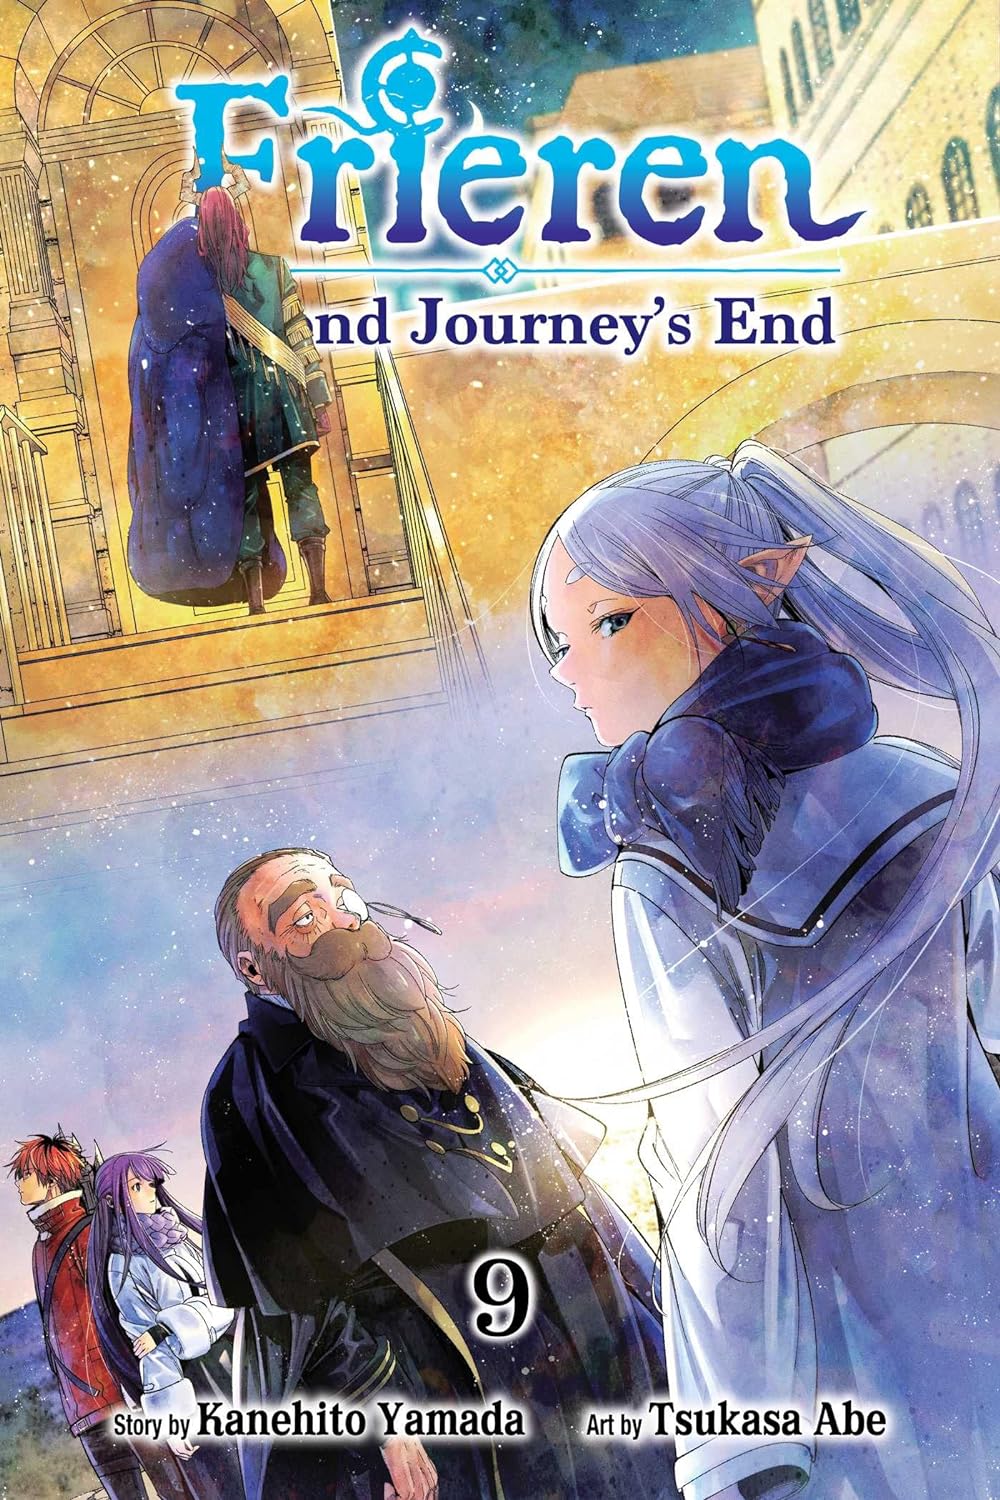 Frieren: Beyond Journey's End Volume 9